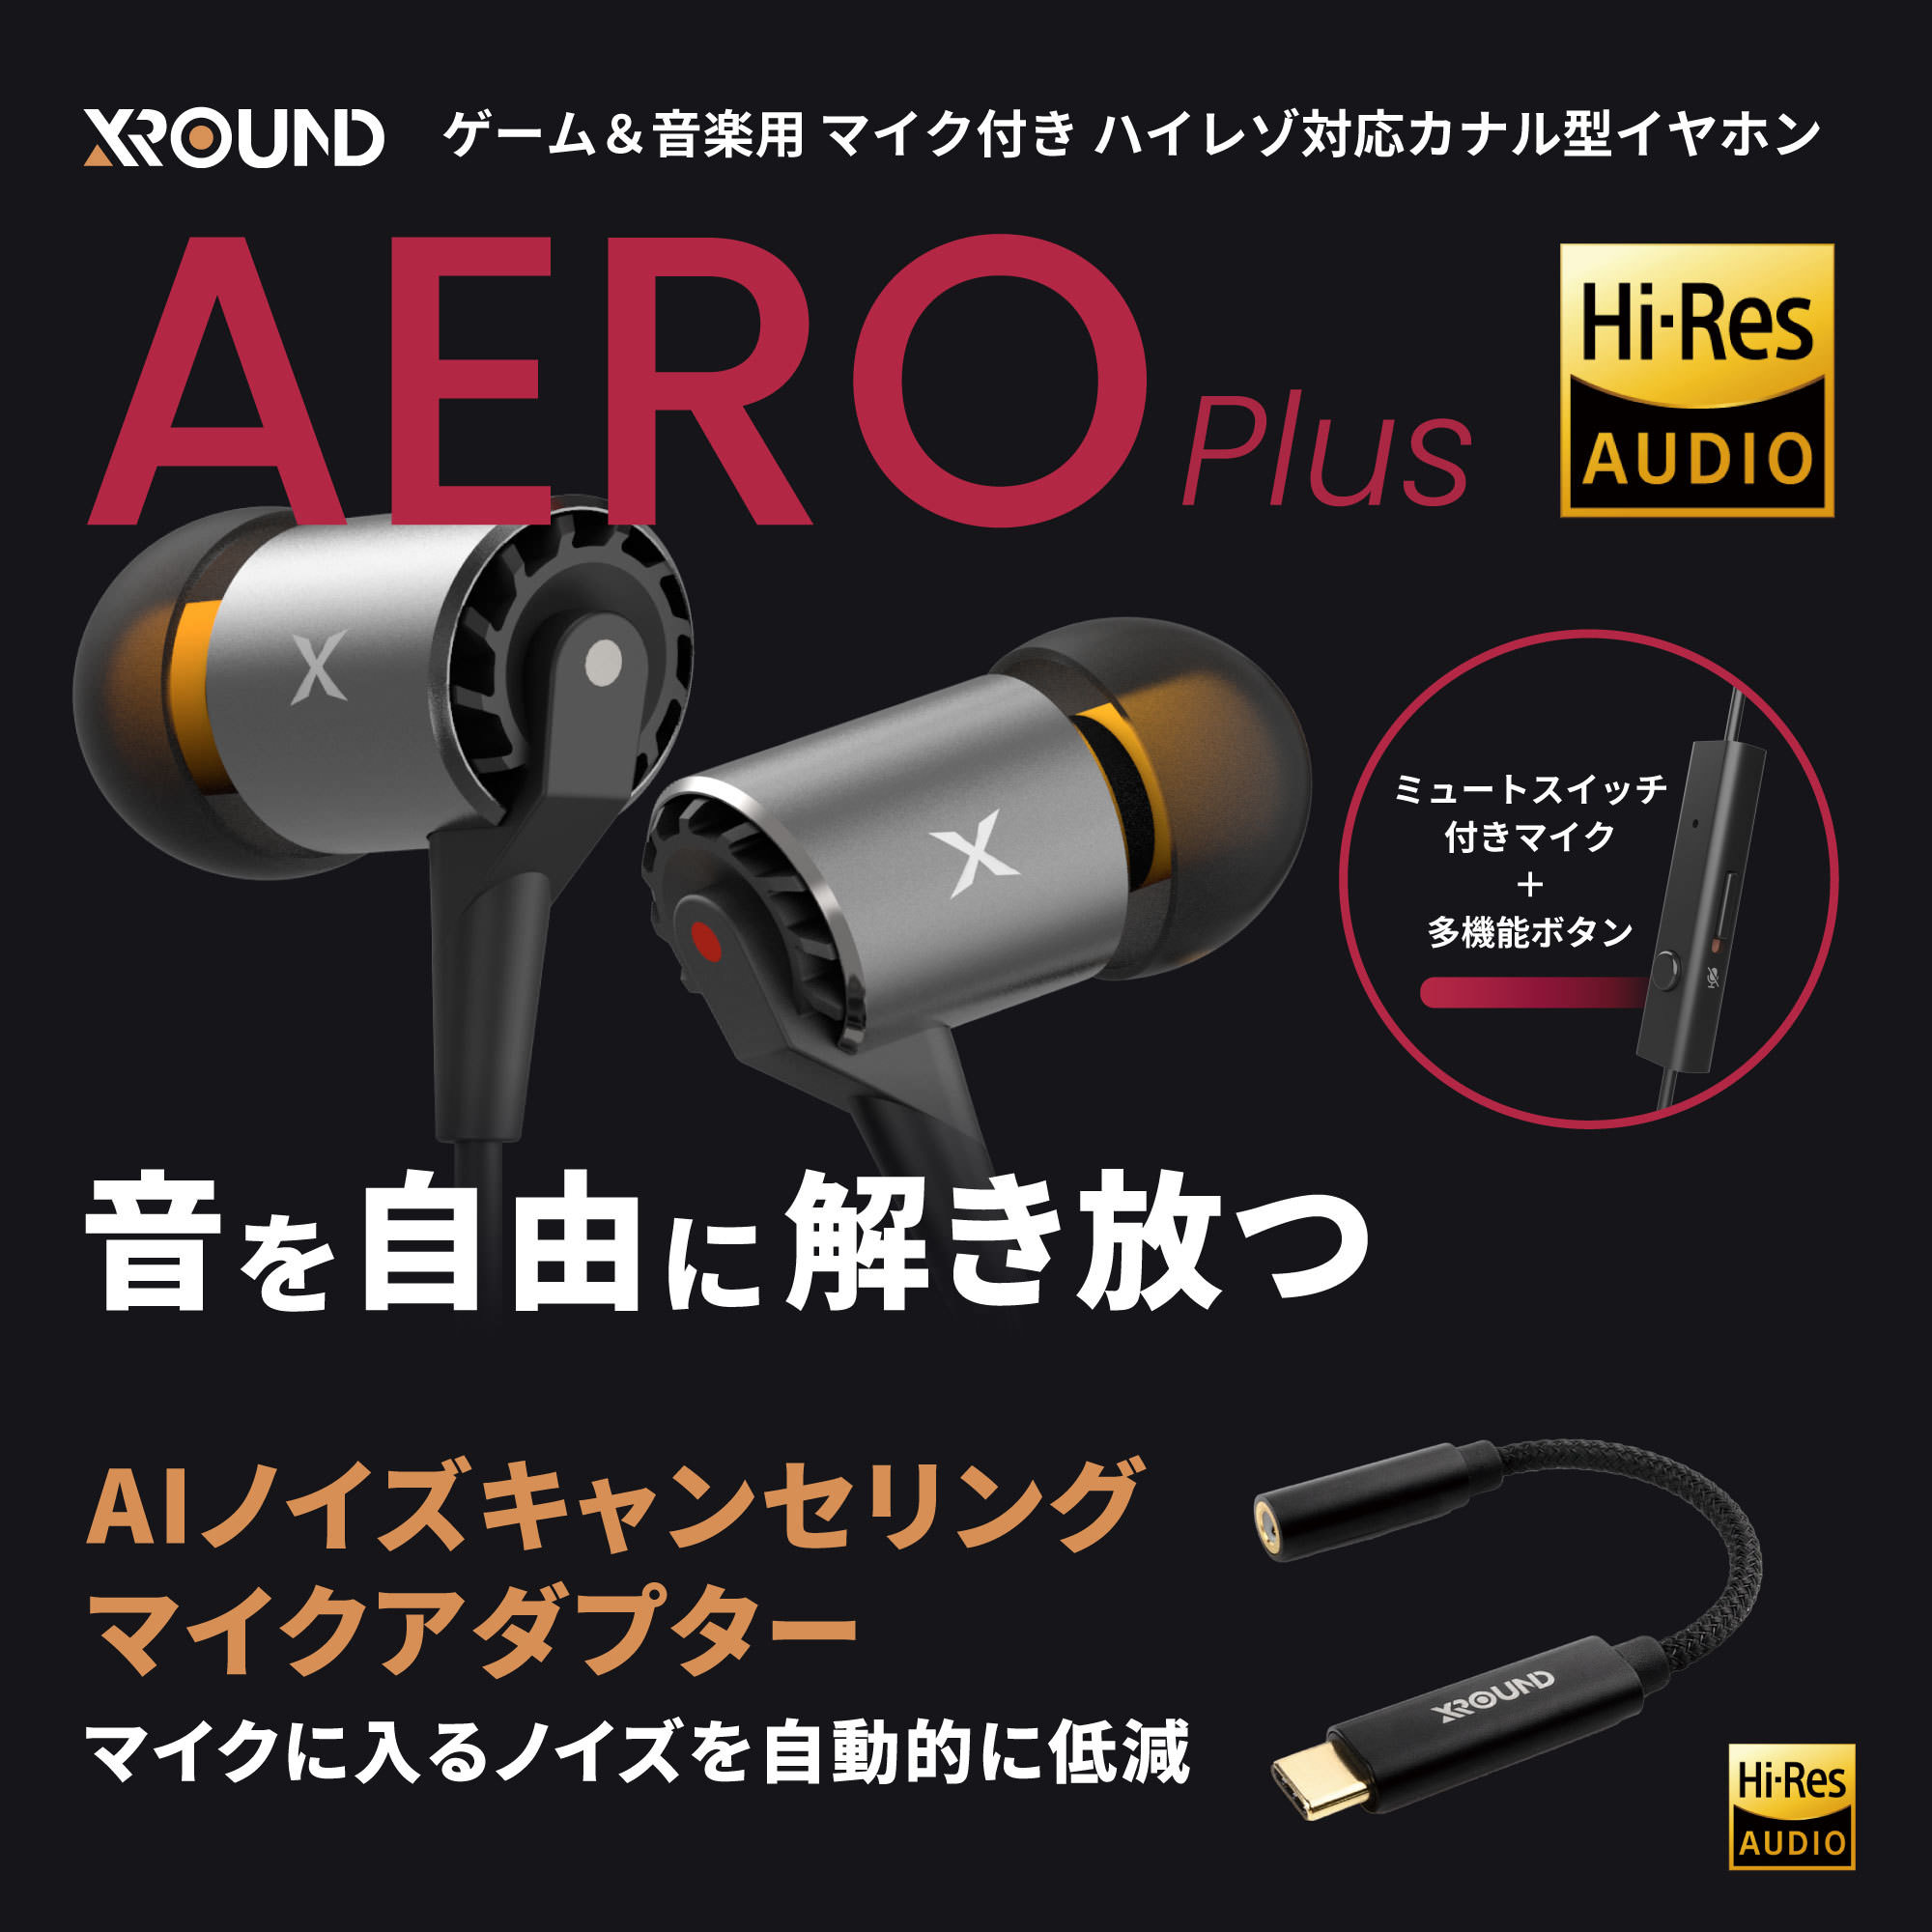 台湾XROUNDより、立体感のあるサウンドで人気を得ている
XROUND「AERO」の後継モデル『AERO Plus』が
12月16日(木)に登場